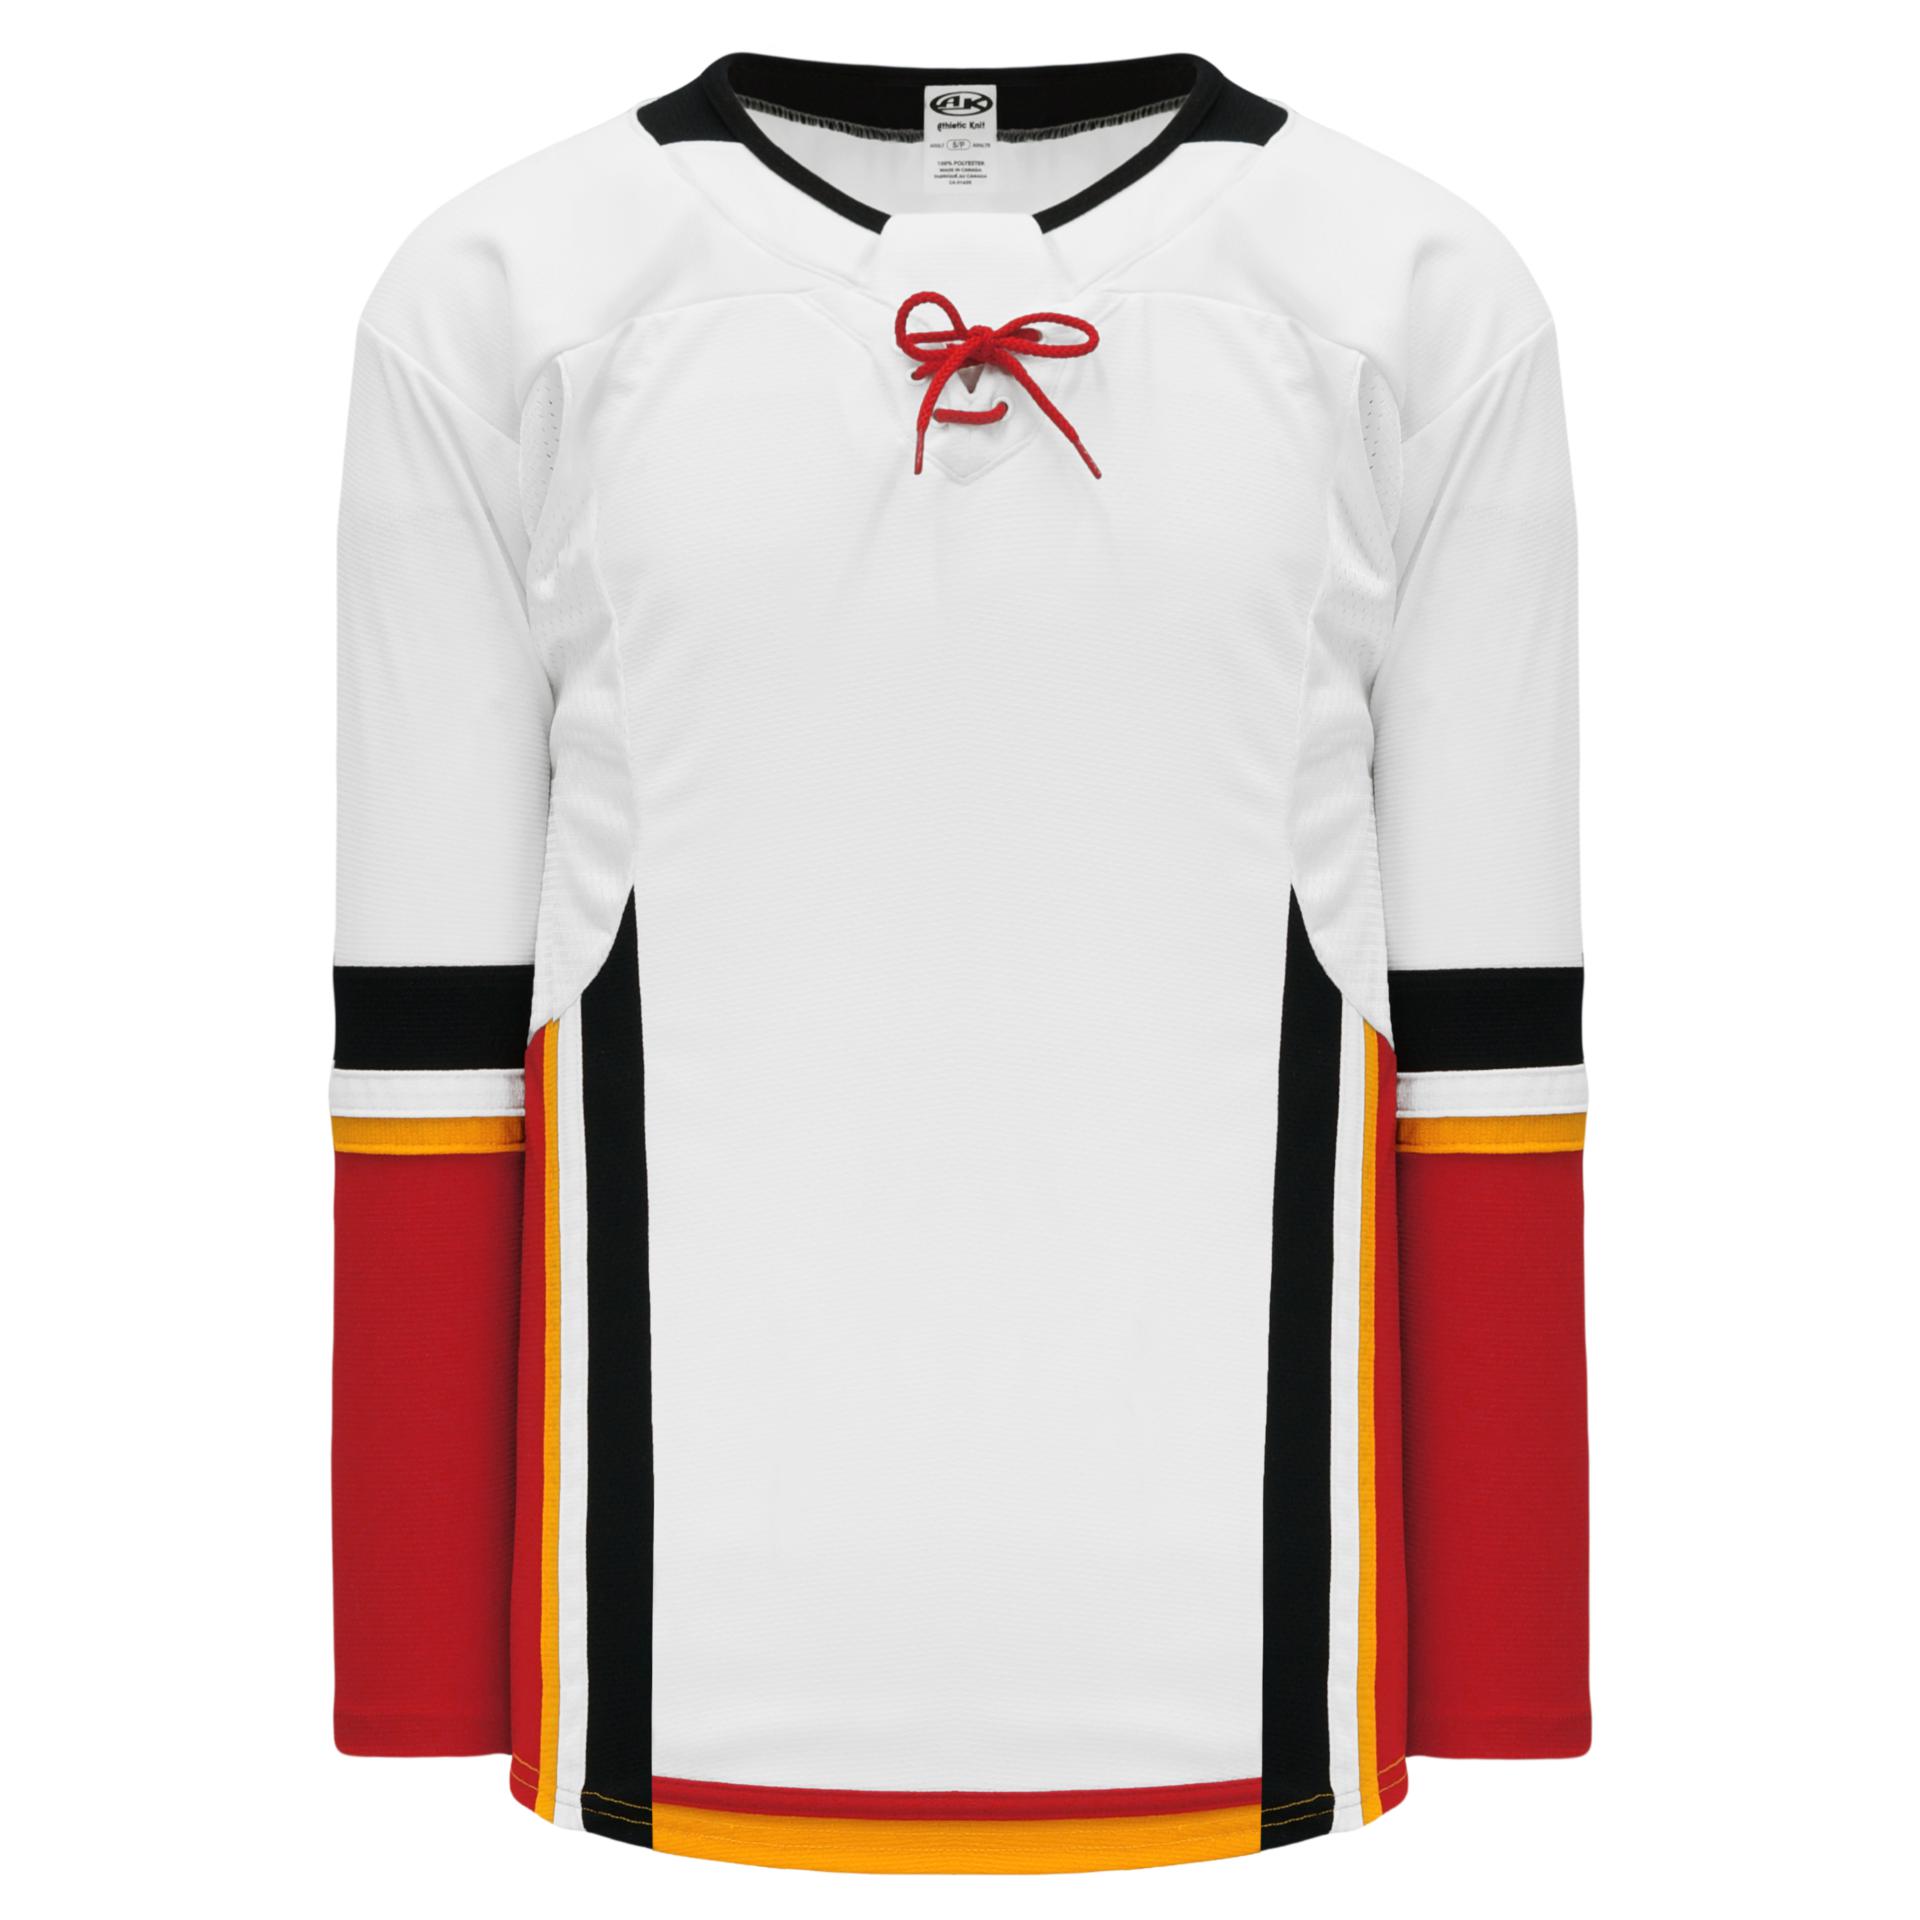 Blank Calgary Flames Jerseys - Athletic Knit CAL472B CAL388B